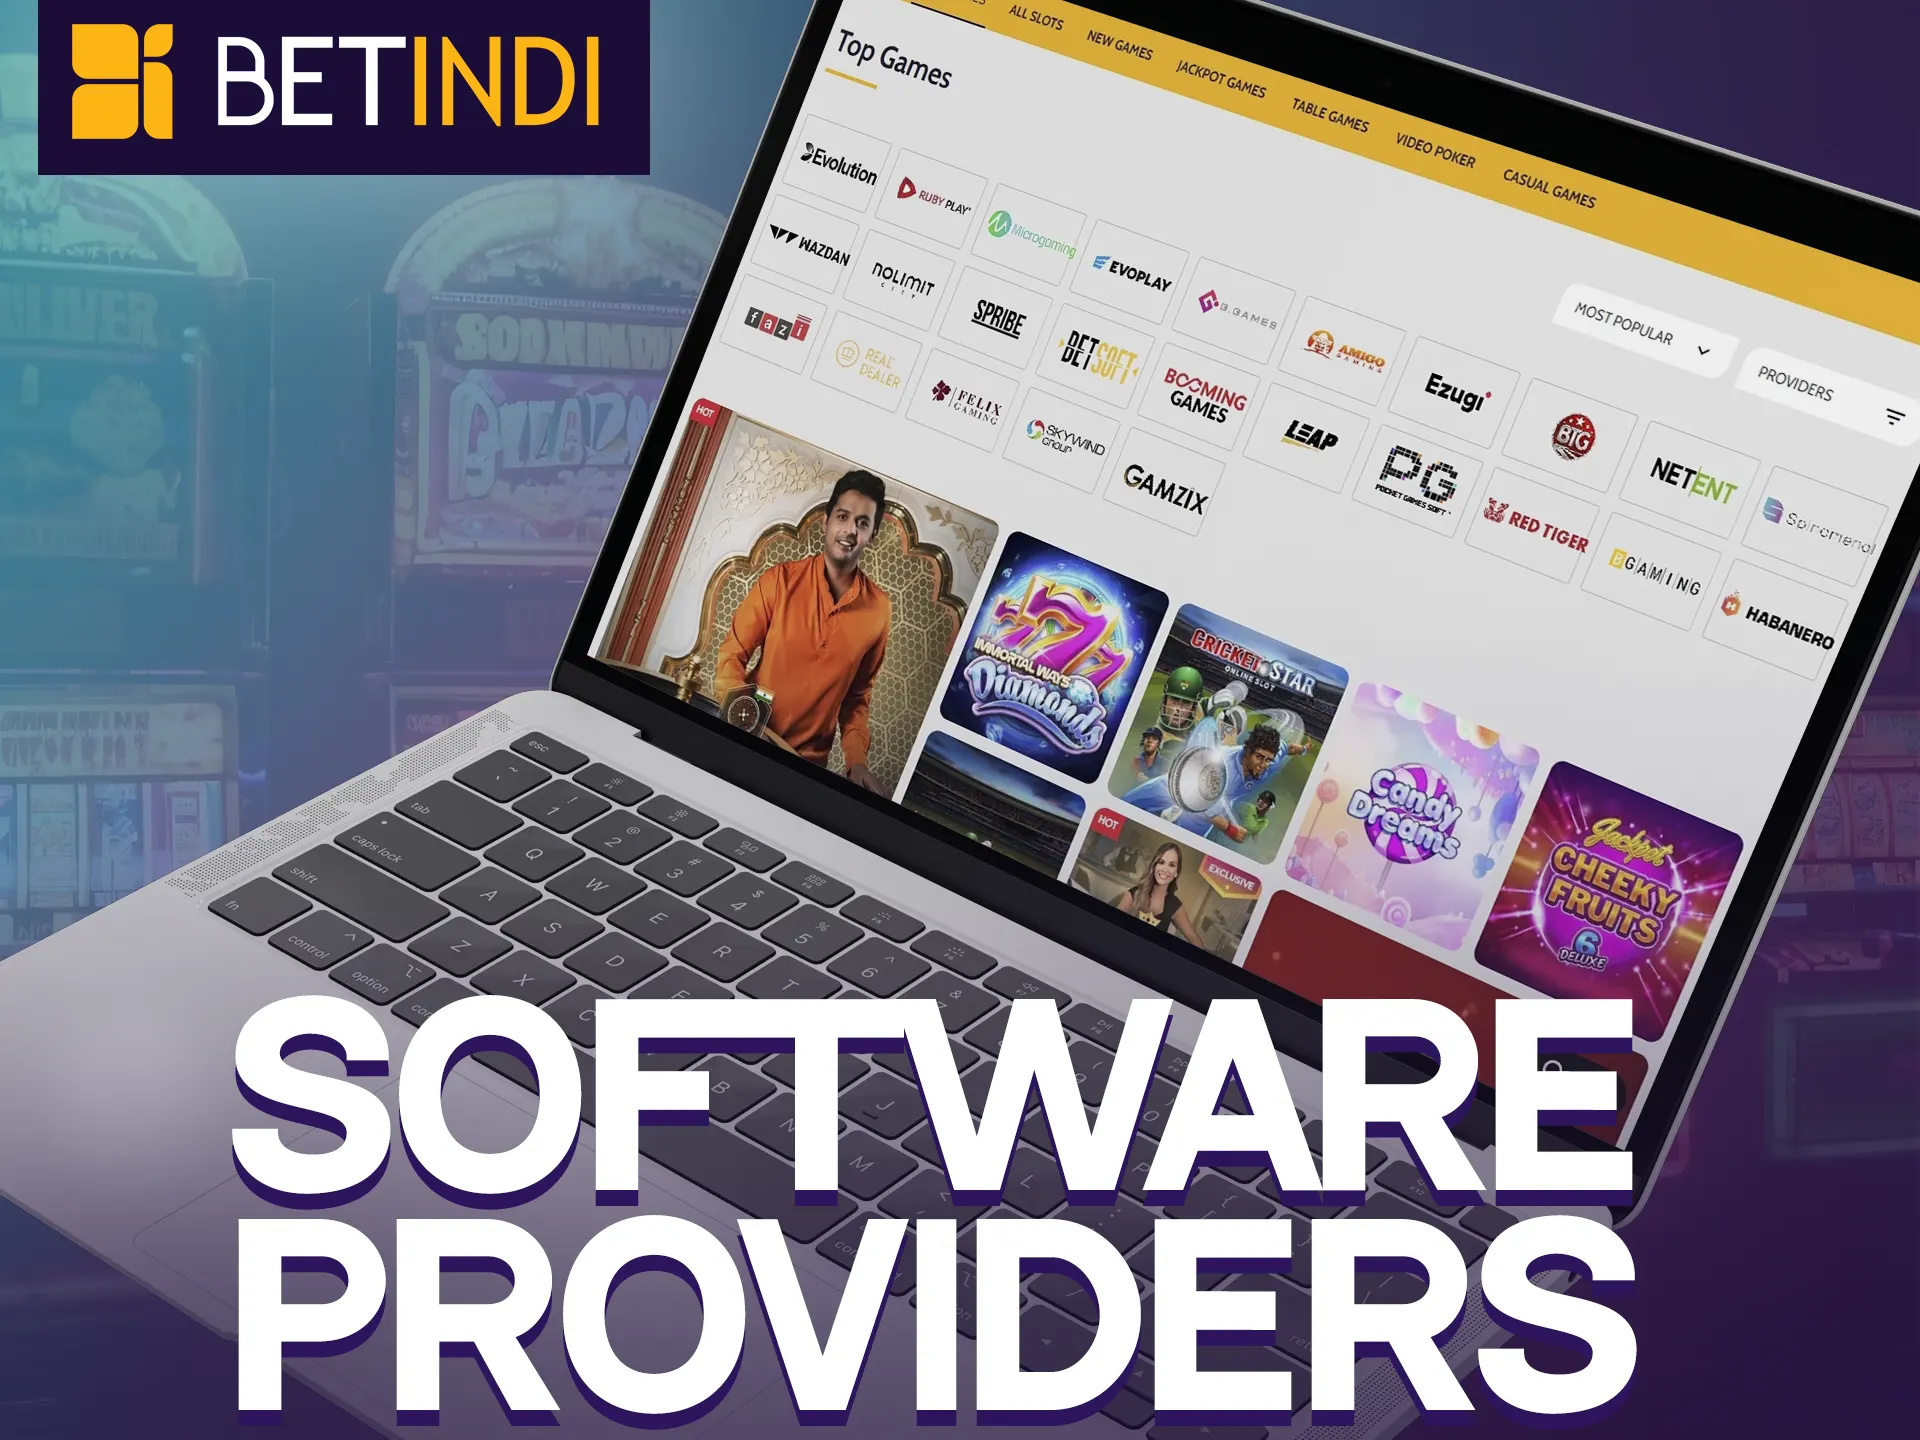 Top gaming providers ensure quality at Betindi.